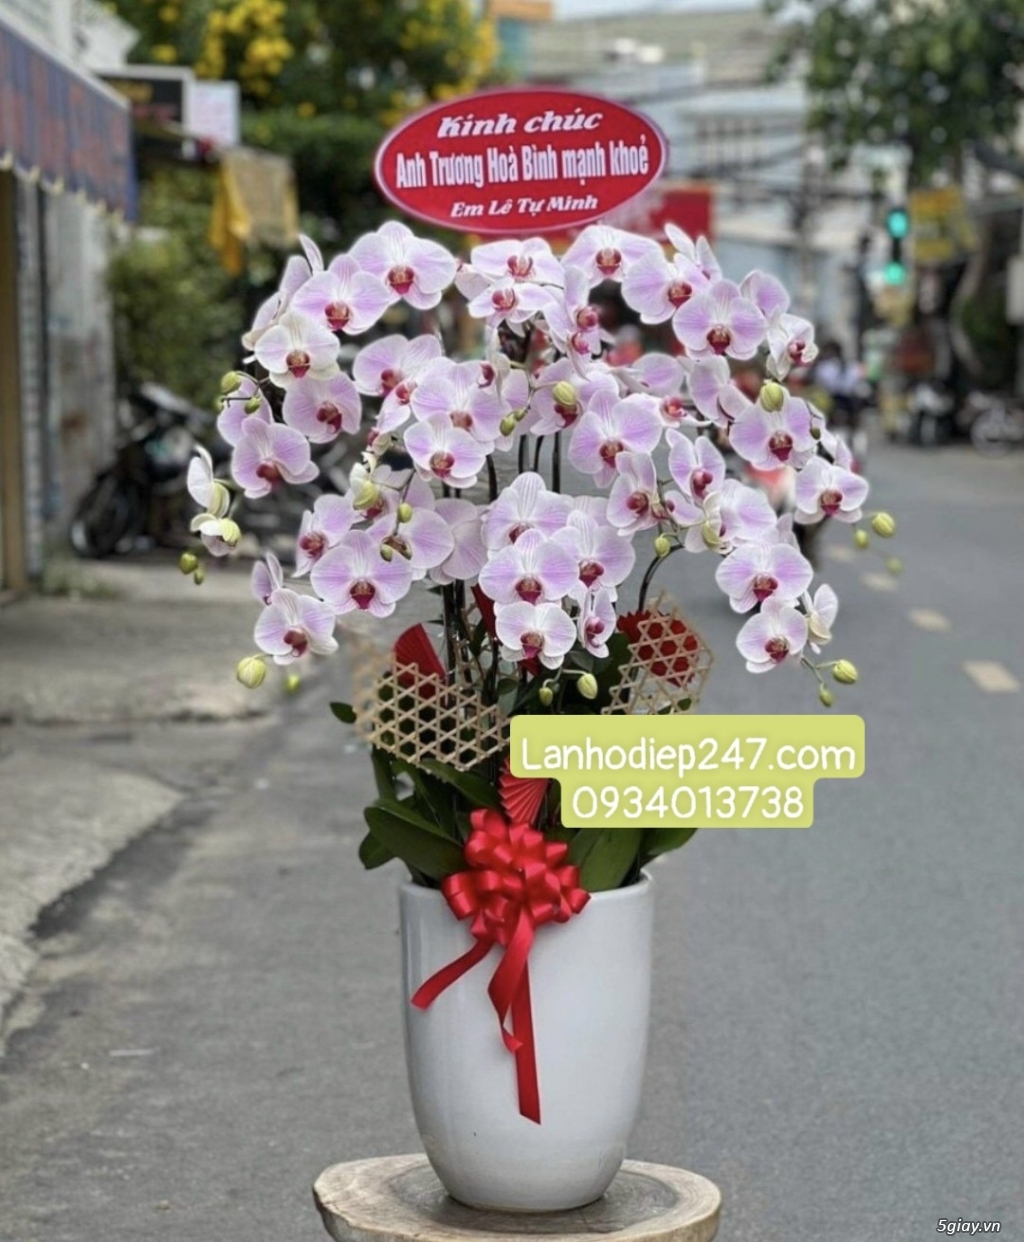 Shop hoa tươi lan hồ điệp 247 tại Thủ Dầu Một Bình Dương 0934013738 - 12